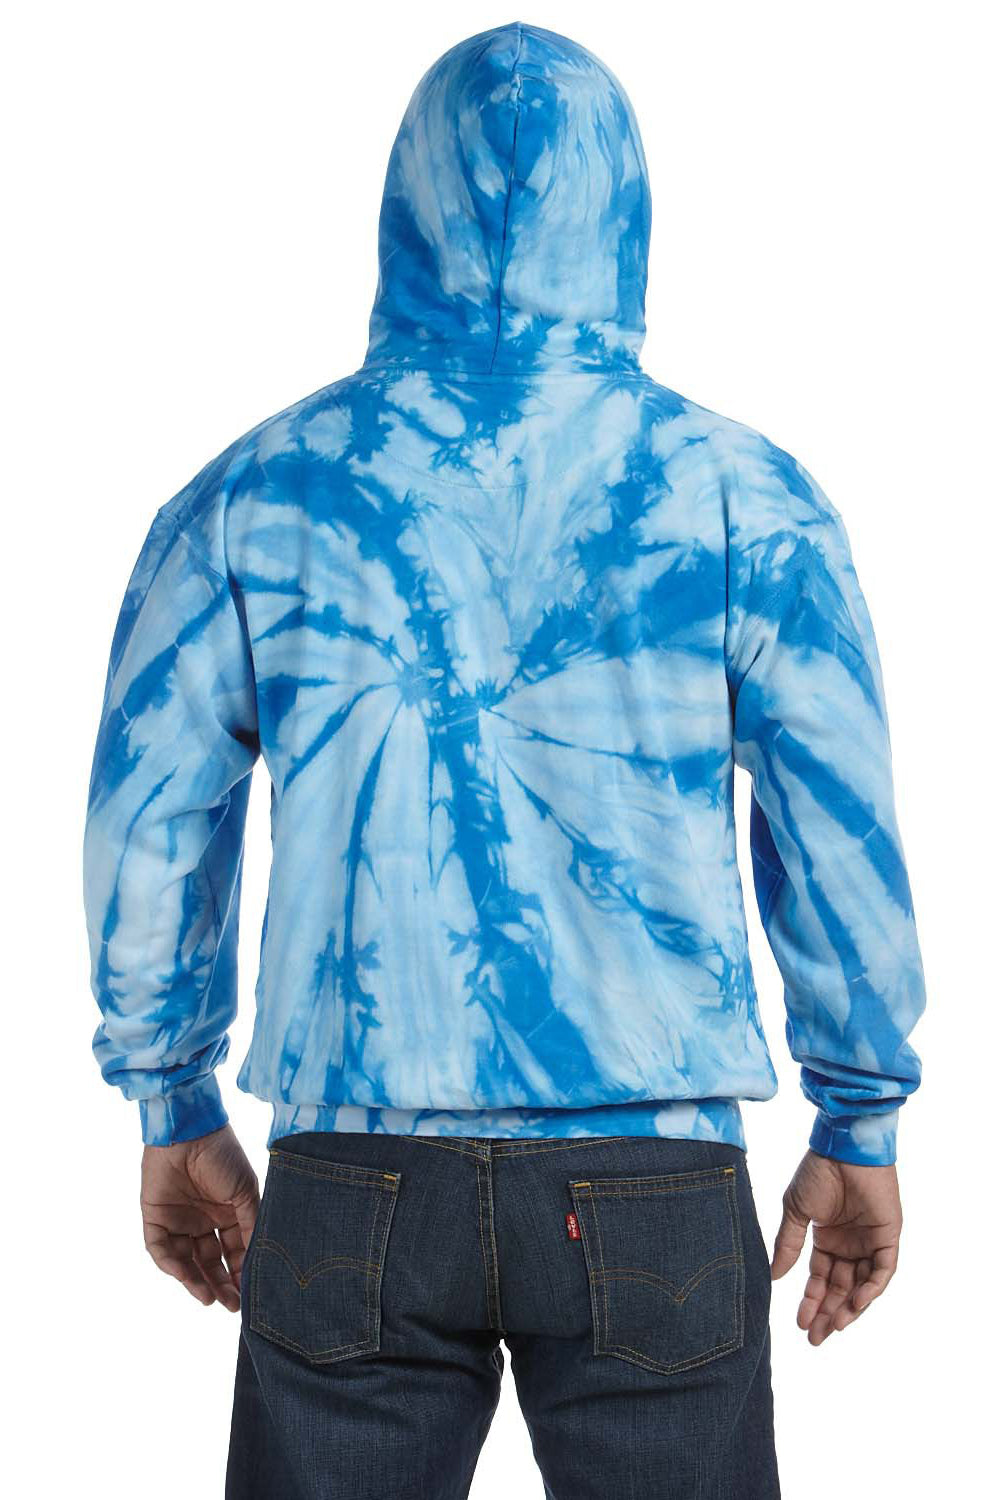 Tie-Dye CD877 Mens Hooded Sweatshirt Hoodie Baby Blue Back